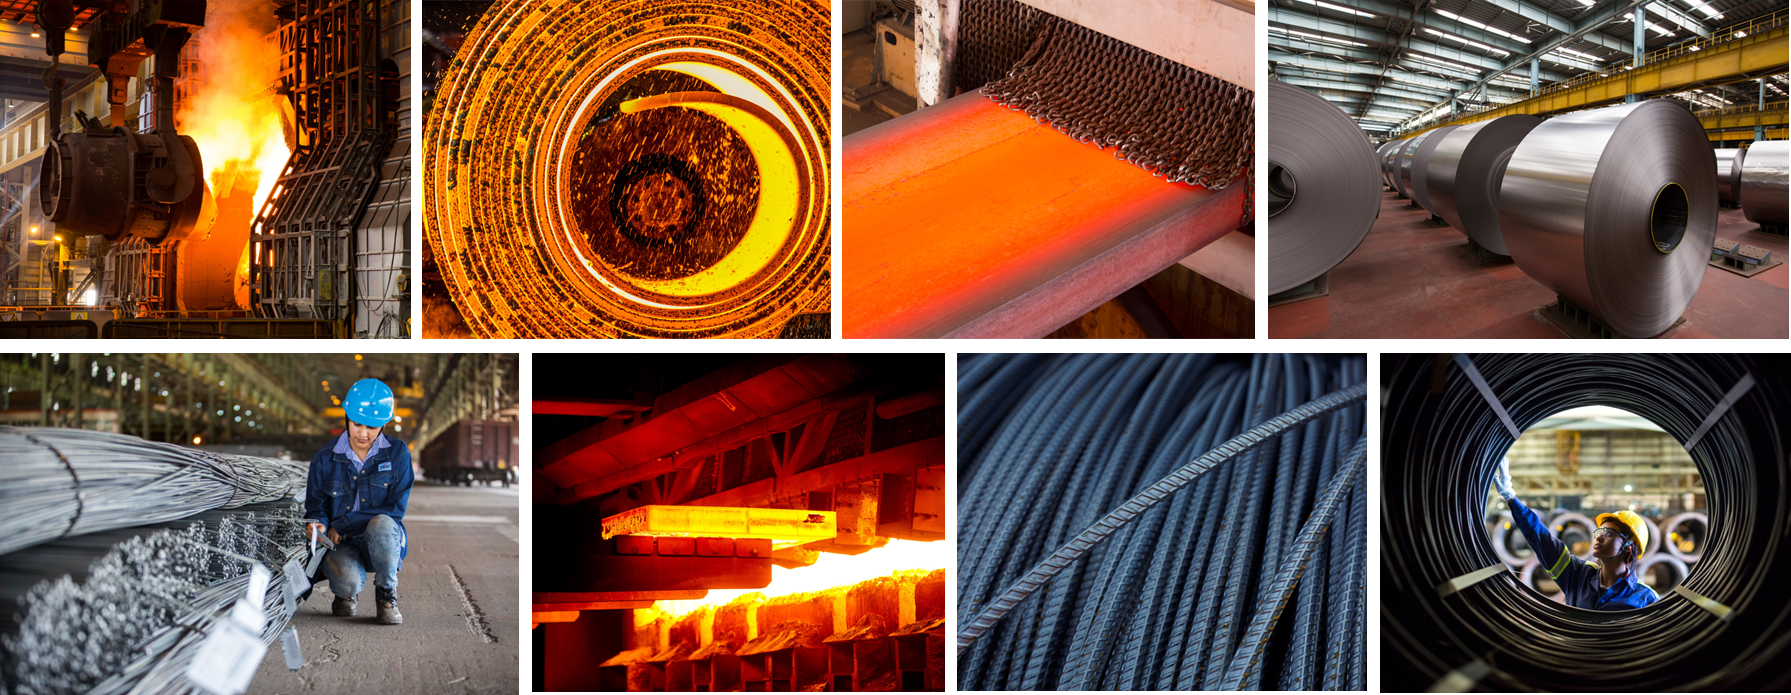 Çelik Kalitelerinin Geliştirilmesinin Metalurjik Esasları, Çelik Sınıfları, Standart Gösterimleri ve Mühendislik Uygulamalarda Çelik Seçimi Eğitimi